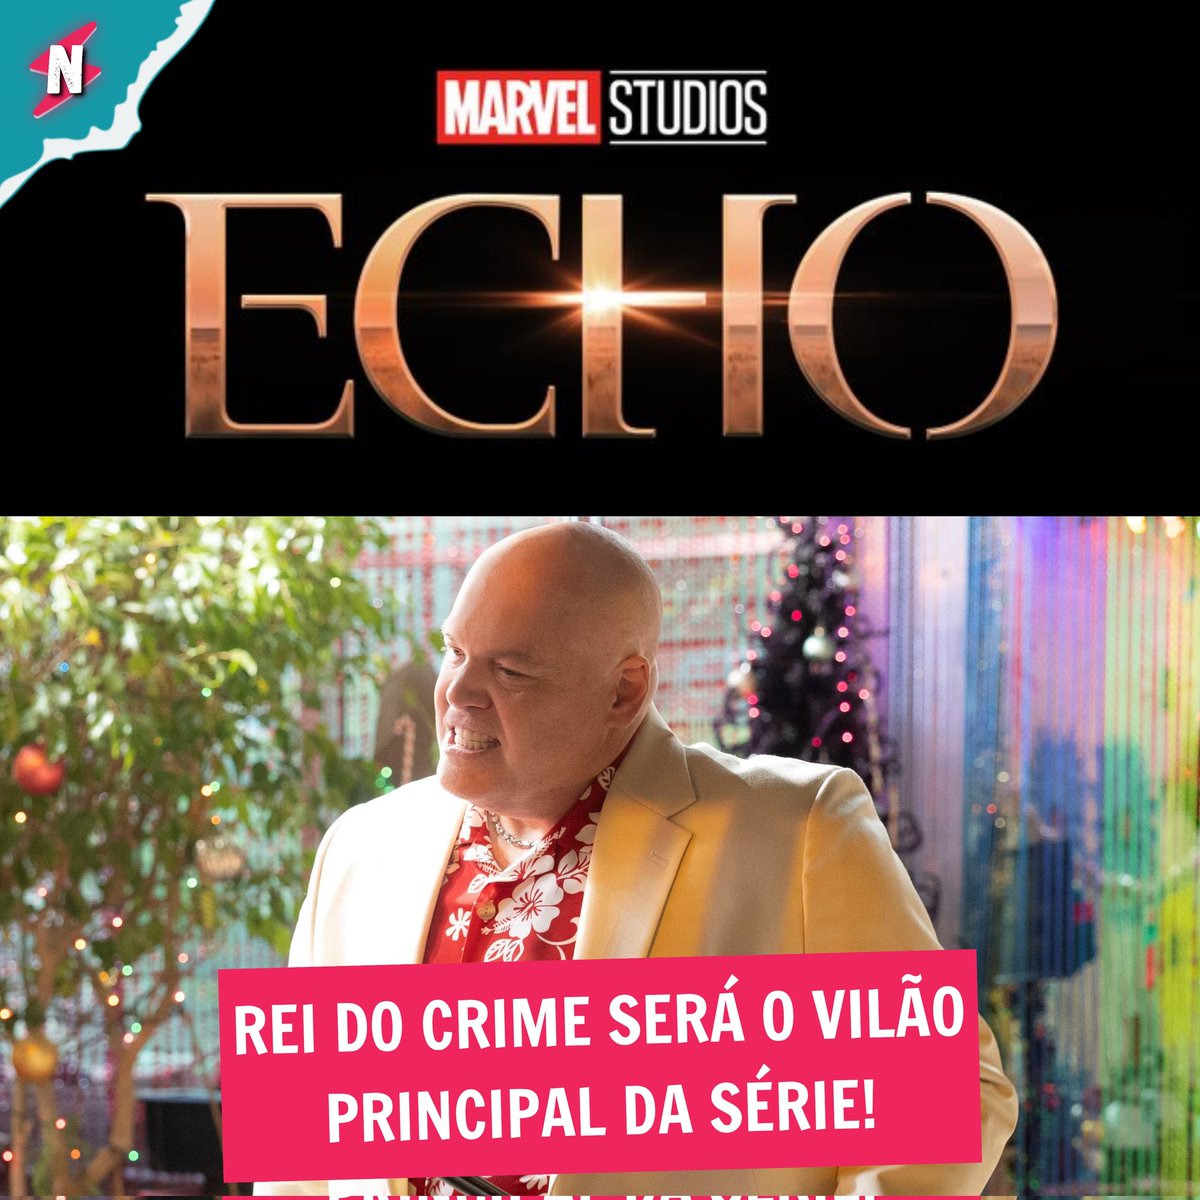 Segundo novo rumor, o Rei do Crime será o principal vilão de 'Echo'!

#nerdolas #marvel #mcu #echo #kingpin #reidocrime